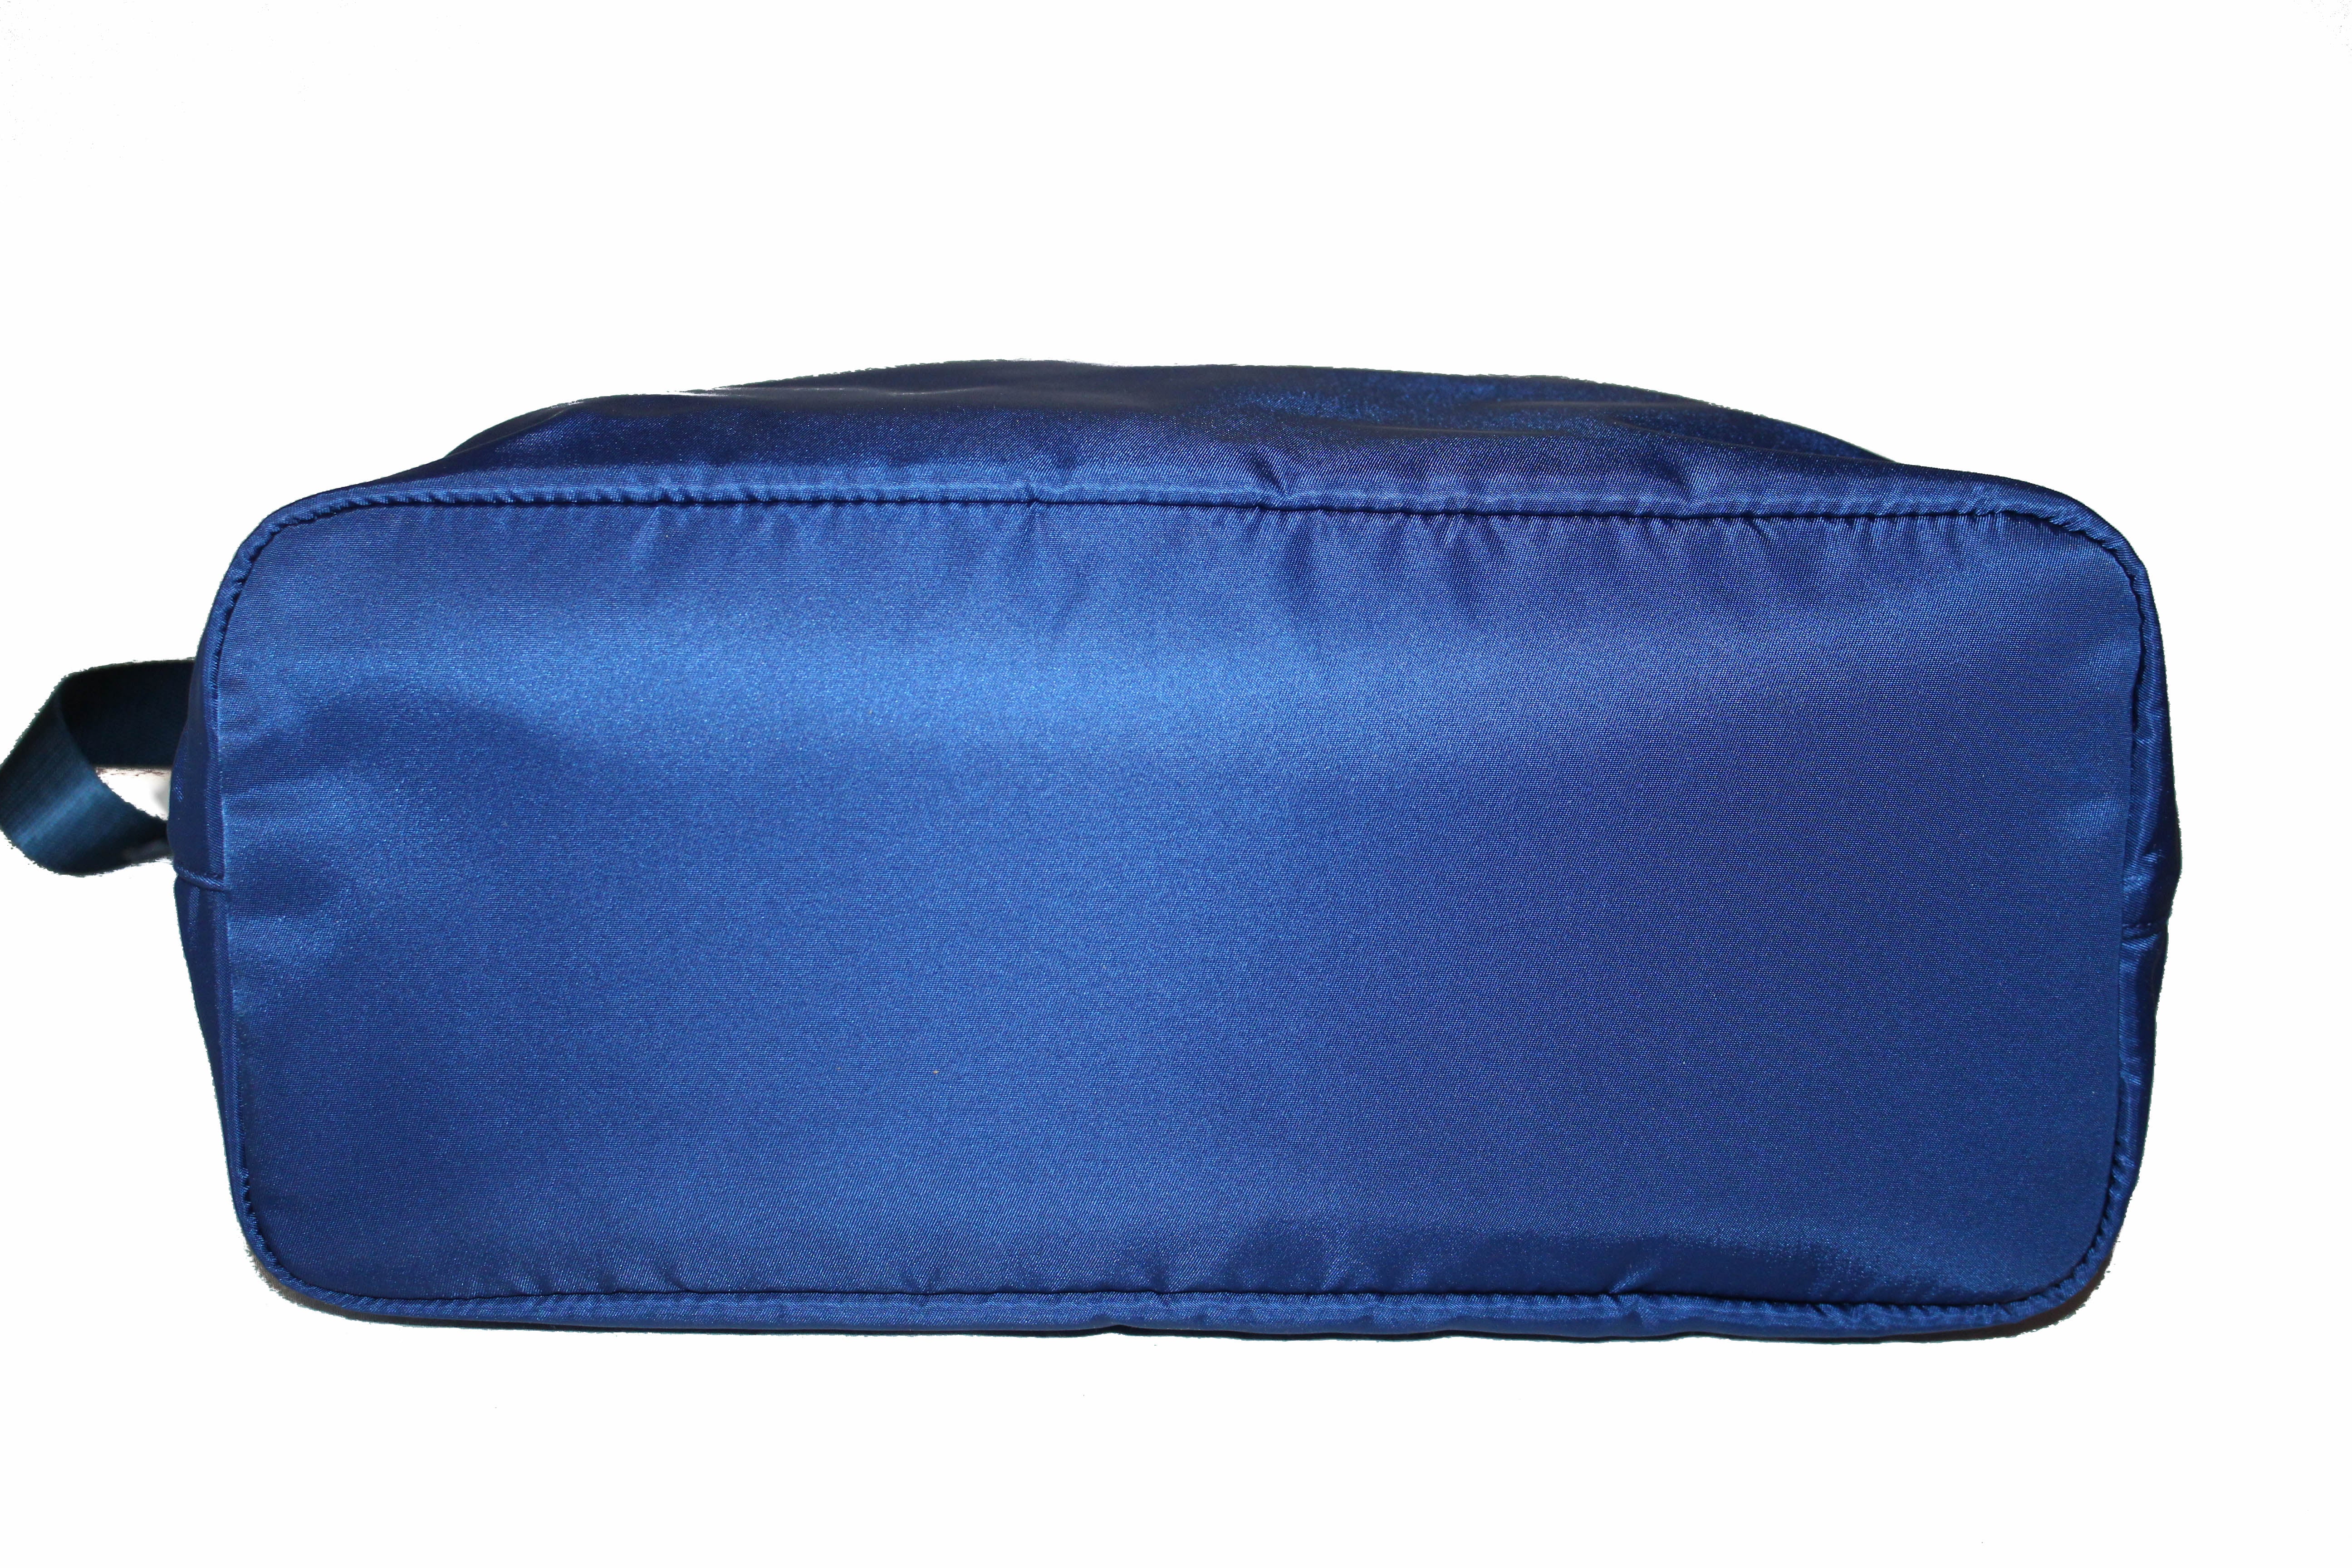 Prada - Navy Blue Tessuto Messenger Bag